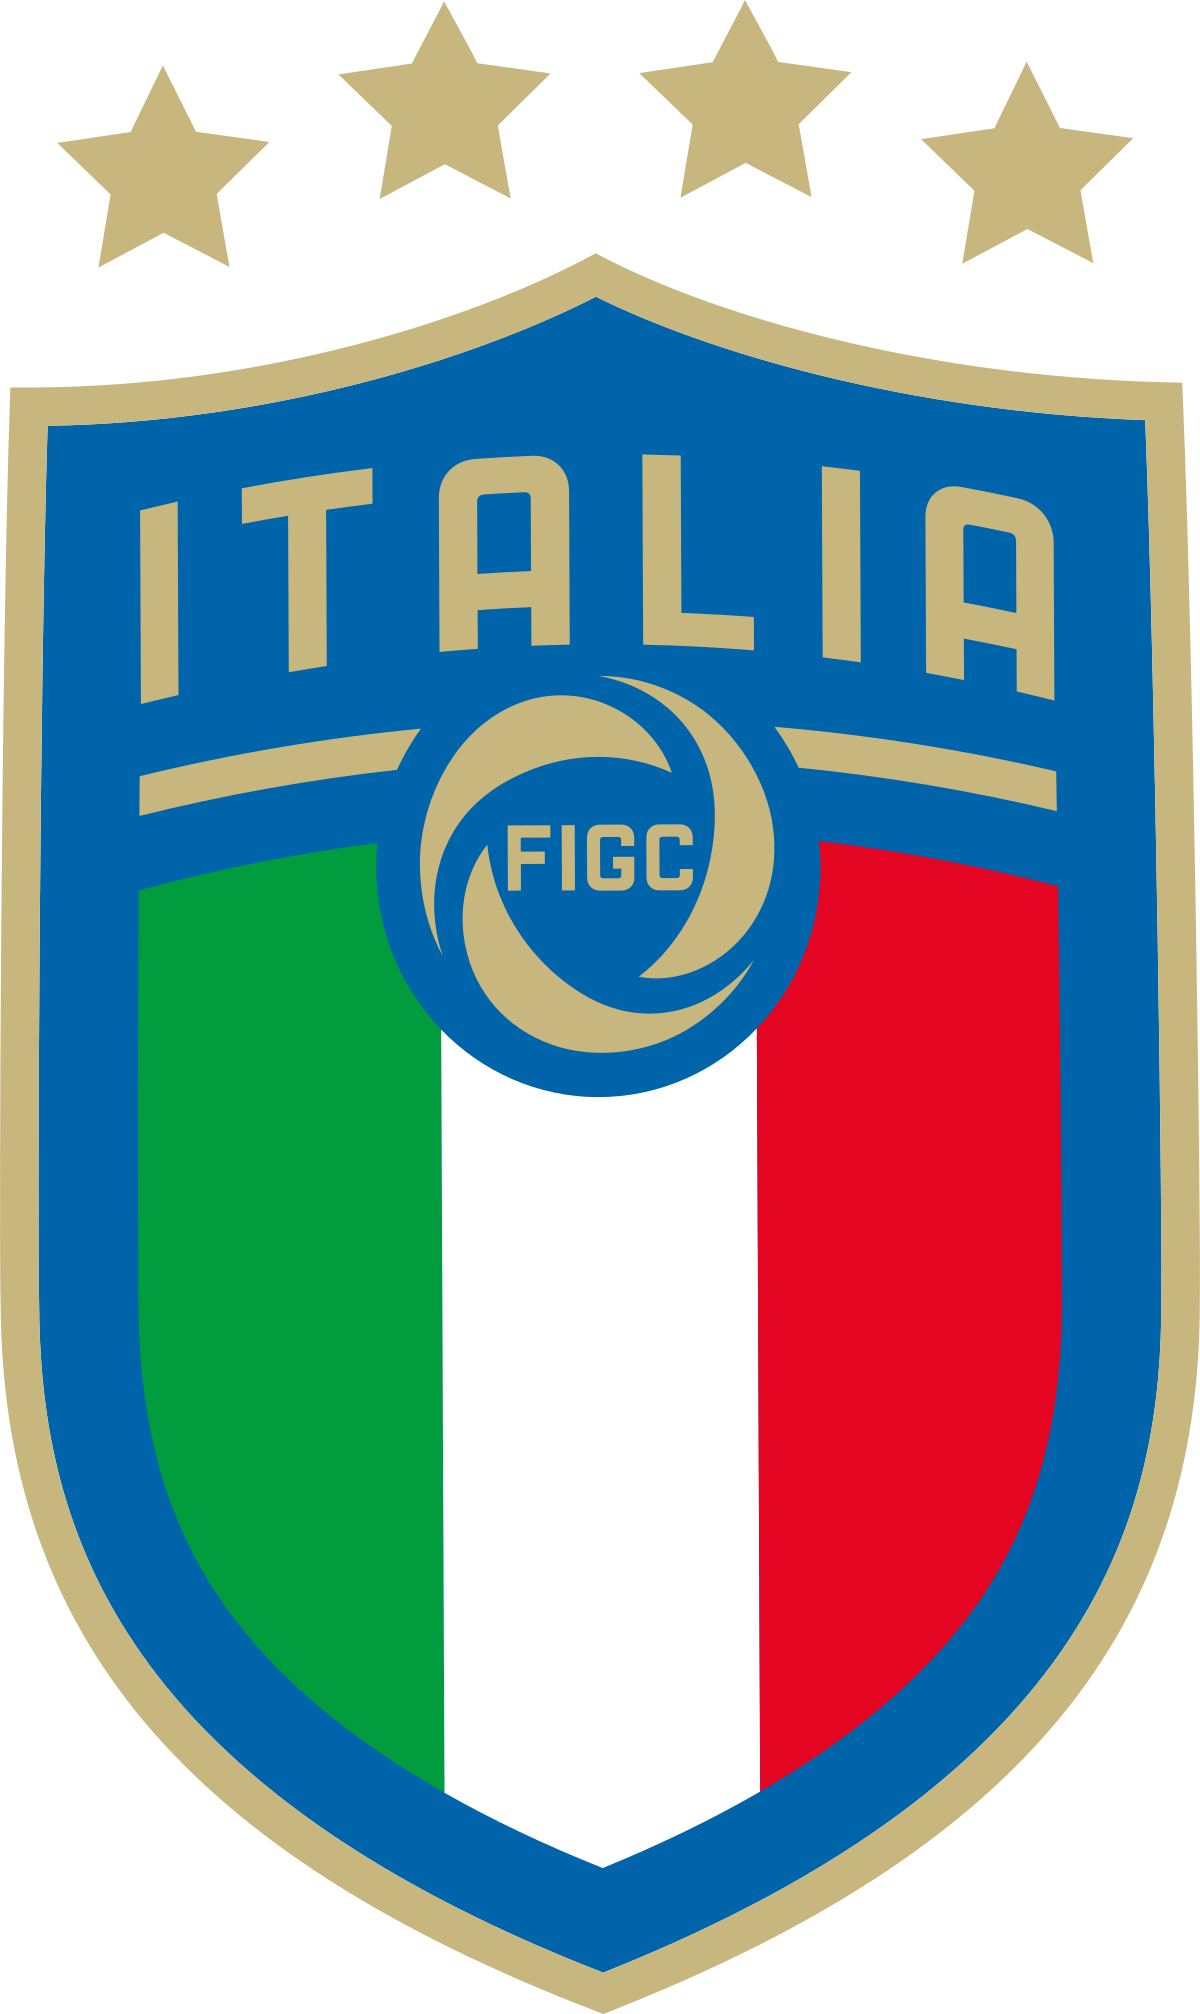 Italian S Logo - Italy national football team